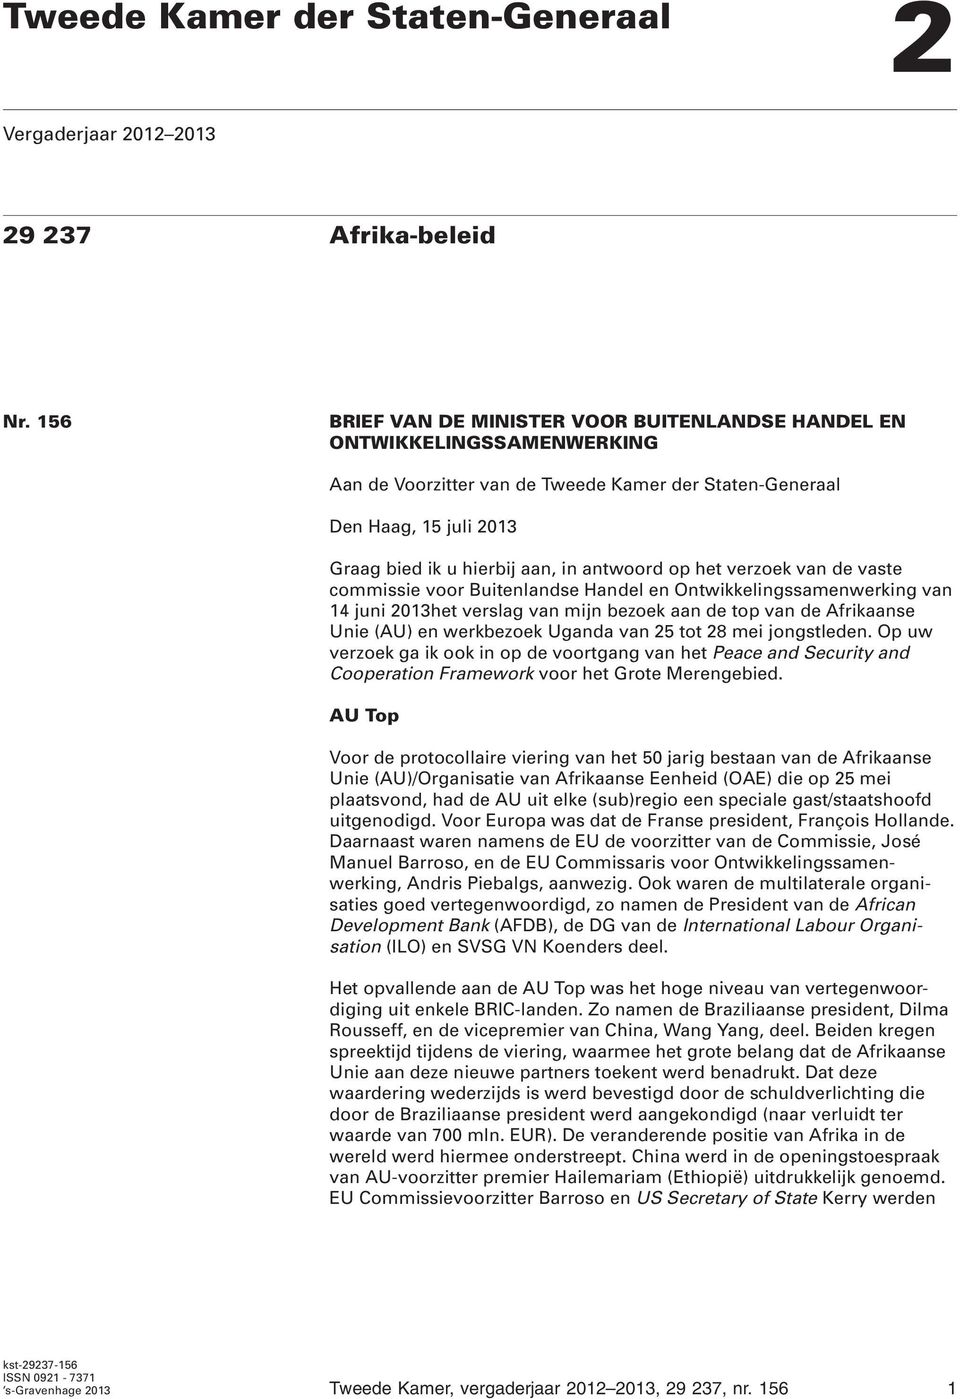 antwoord op het verzoek van de vaste commissie voor Buitenlandse Handel en Ontwikkelingssamenwerking van 14 juni 2013het verslag van mijn bezoek aan de top van de Afrikaanse Unie (AU) en werkbezoek